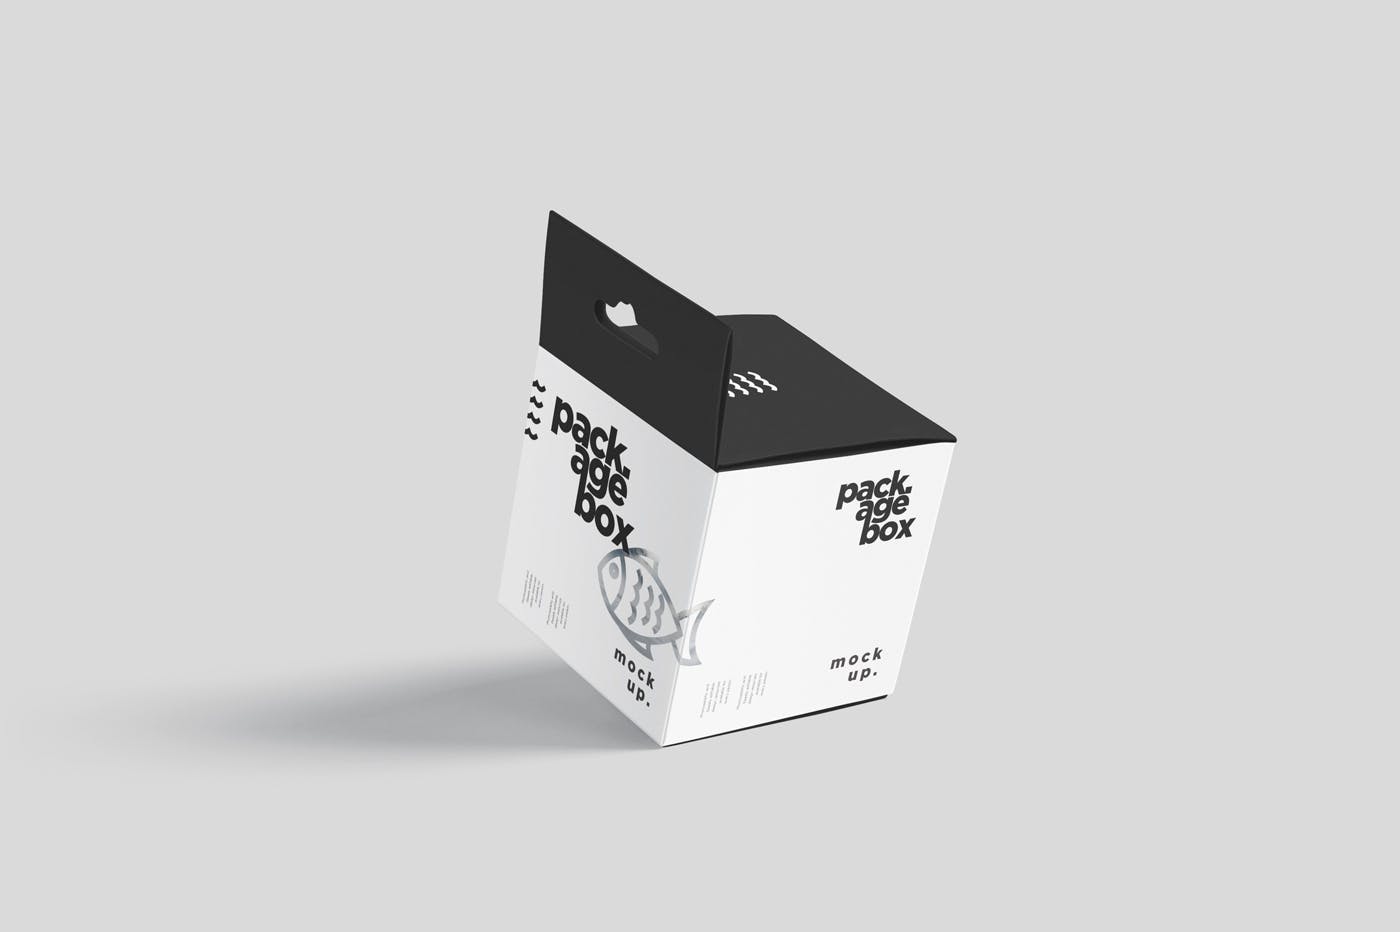 挂耳式方形产品包装盒样机模板 Package Box Mockup Set – Square With Hanger插图(2)